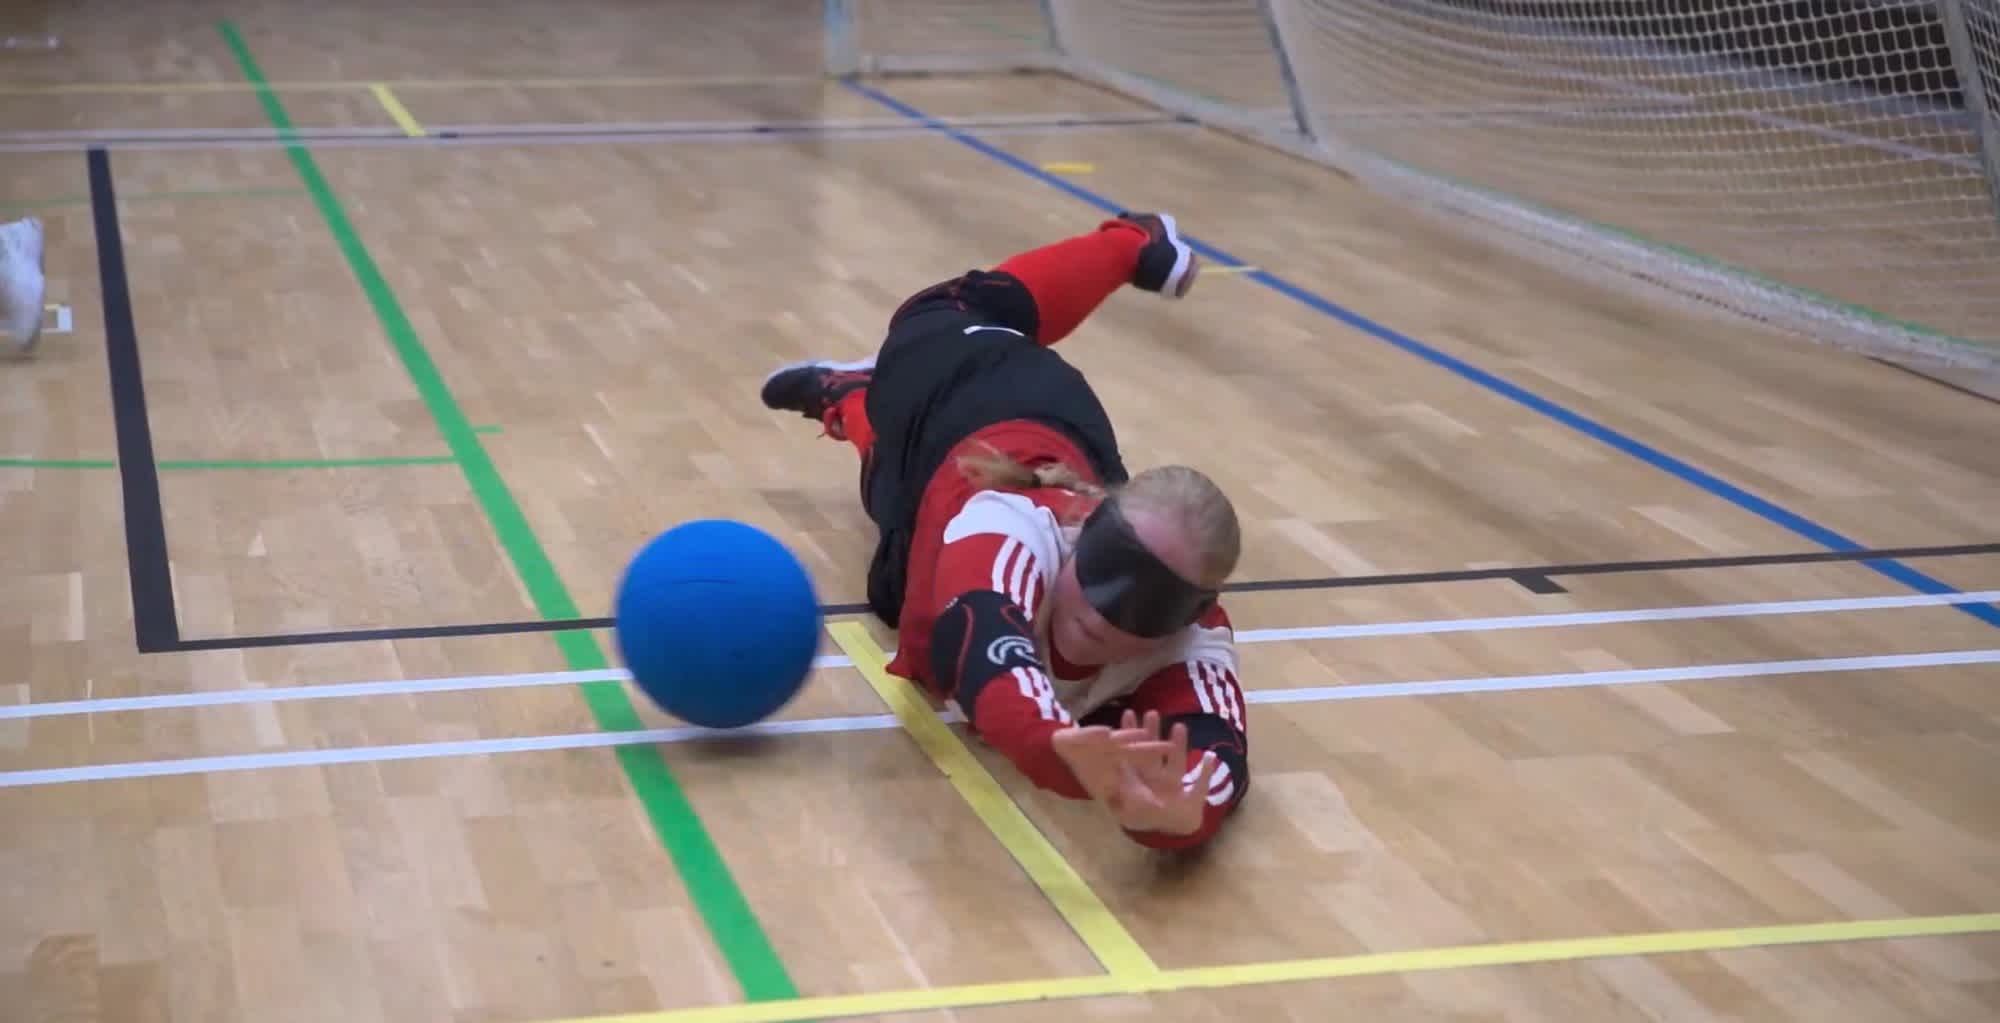 Inomhusmiljö, idrottshall. En goalballspelare med träningskläder och ögonbindel kastar sig längs golvet för att skydda målet från den blå bollen som kommer farande.